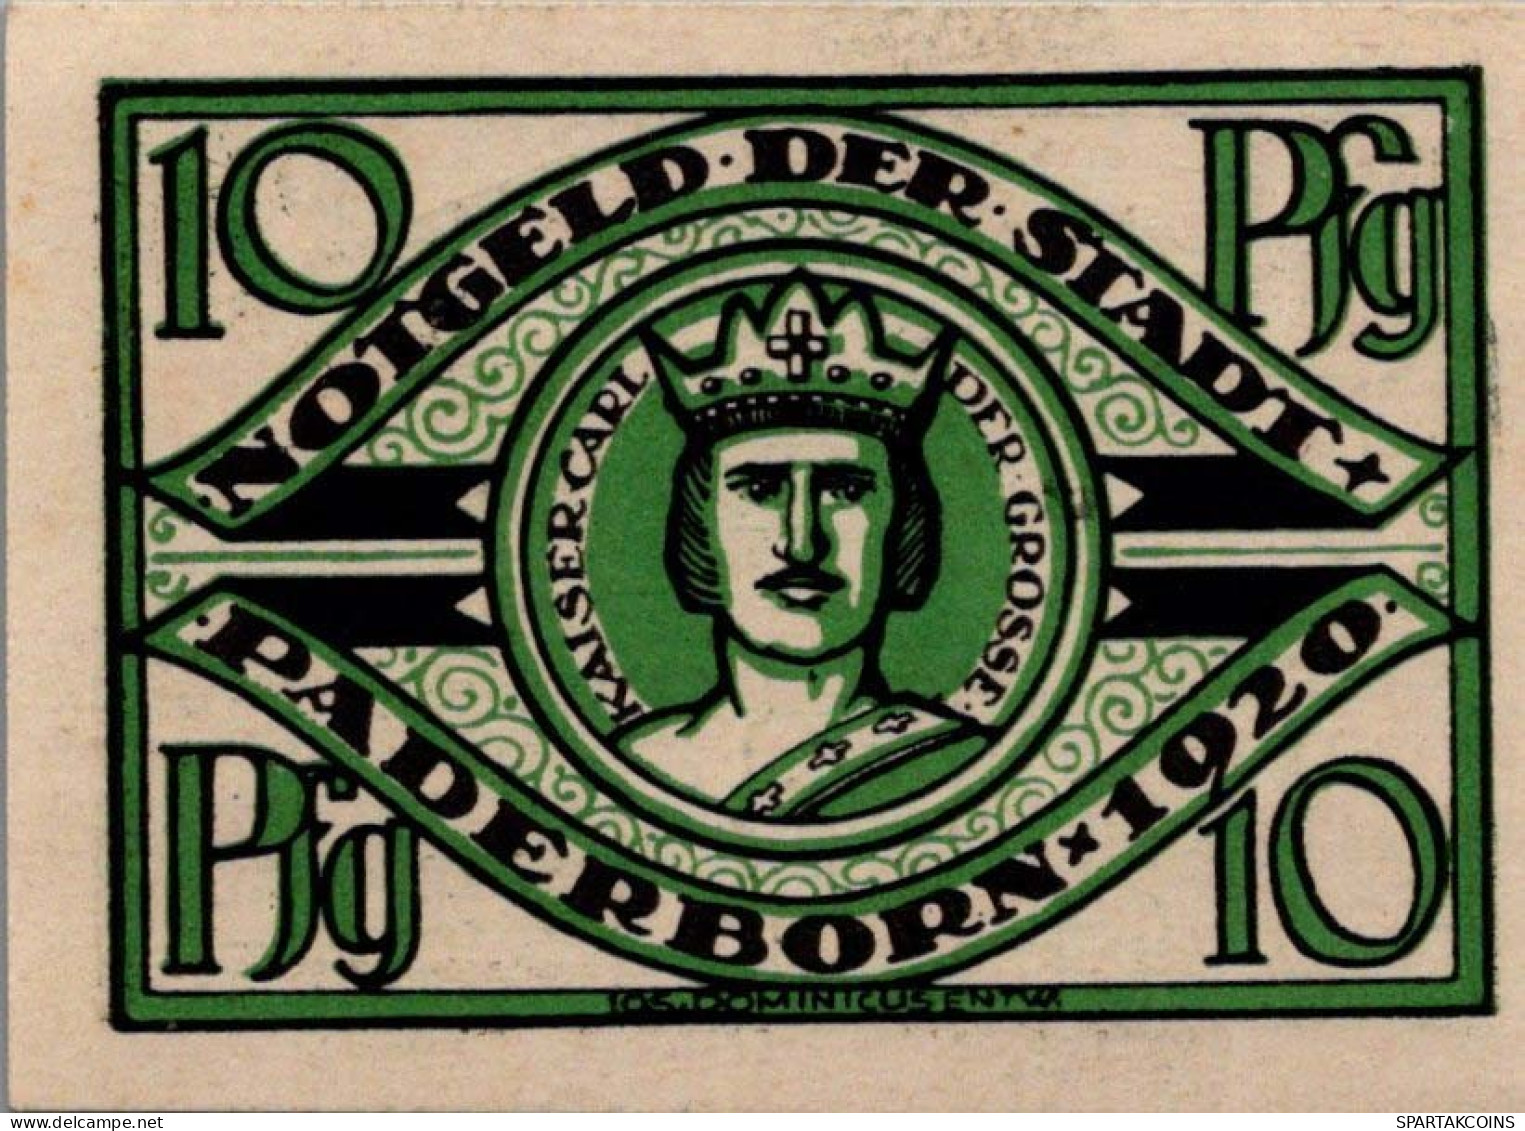 10 PFENNIG 1920 Stadt PADERBORN Westphalia UNC DEUTSCHLAND Notgeld #PI950 - [11] Local Banknote Issues